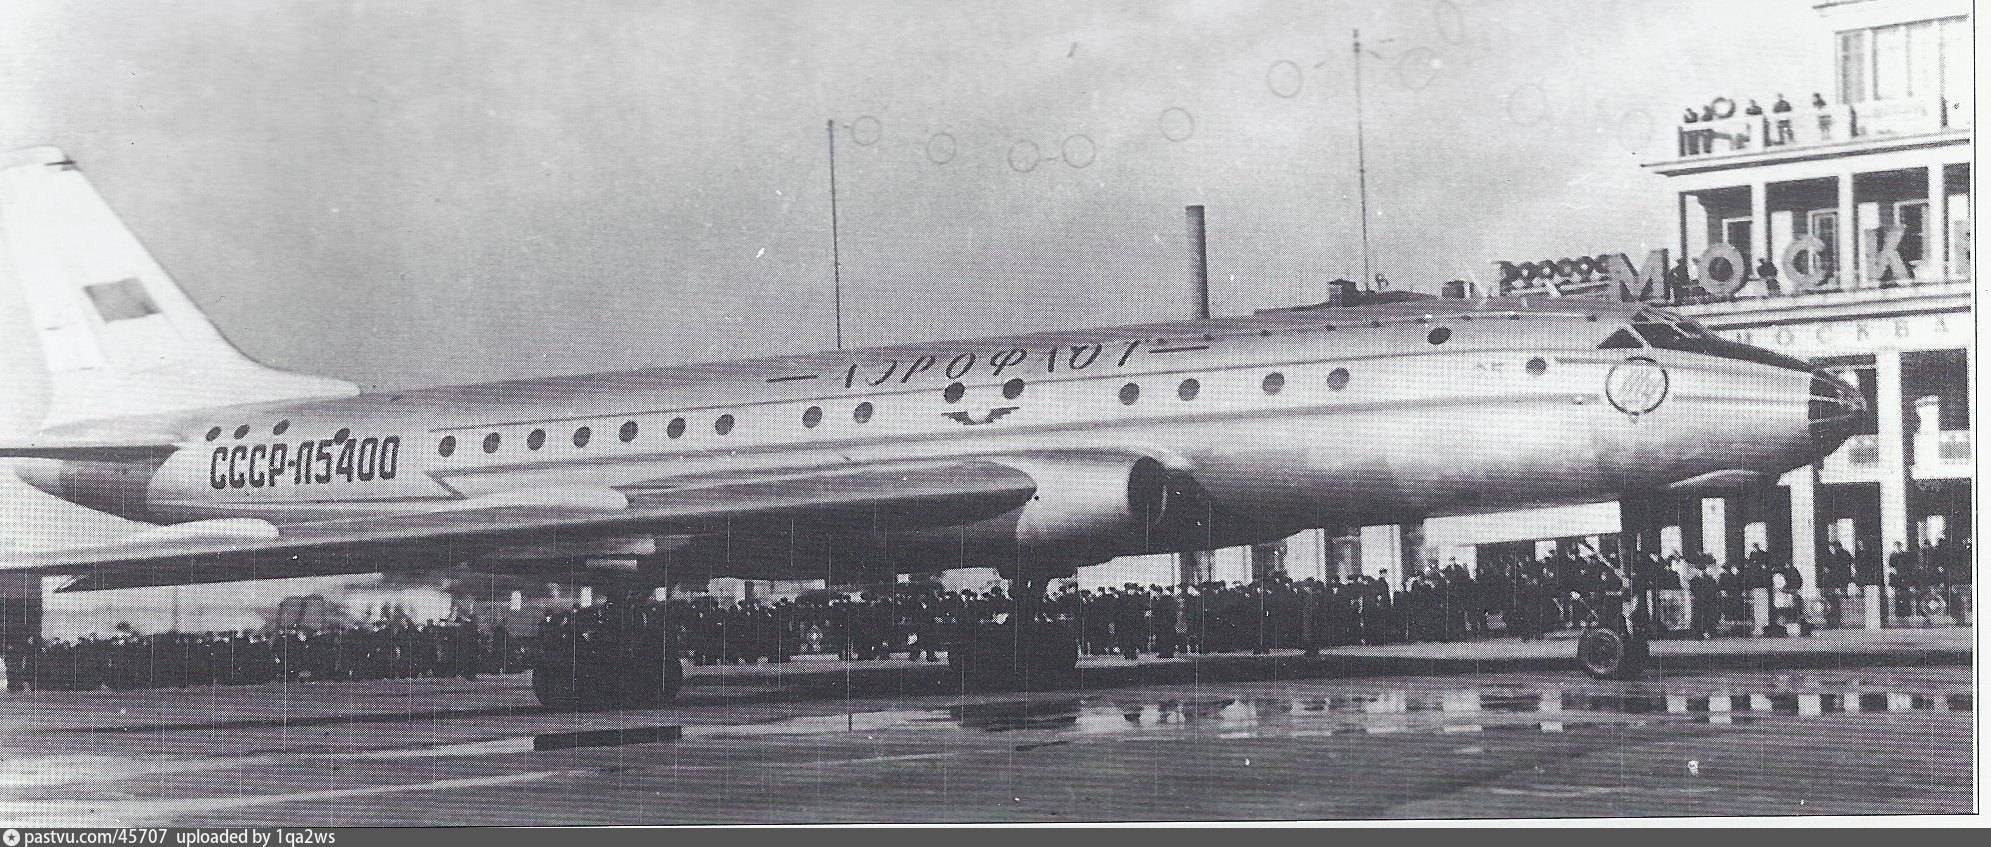 Первый реактивный пассажирский самолет. Ту-104 пассажирский самолёт. Самолет Туполева ту 104. Первый турбореактивный пассажирский лайнер ту-104. Ту-104 пассажирский самолёт СССР.